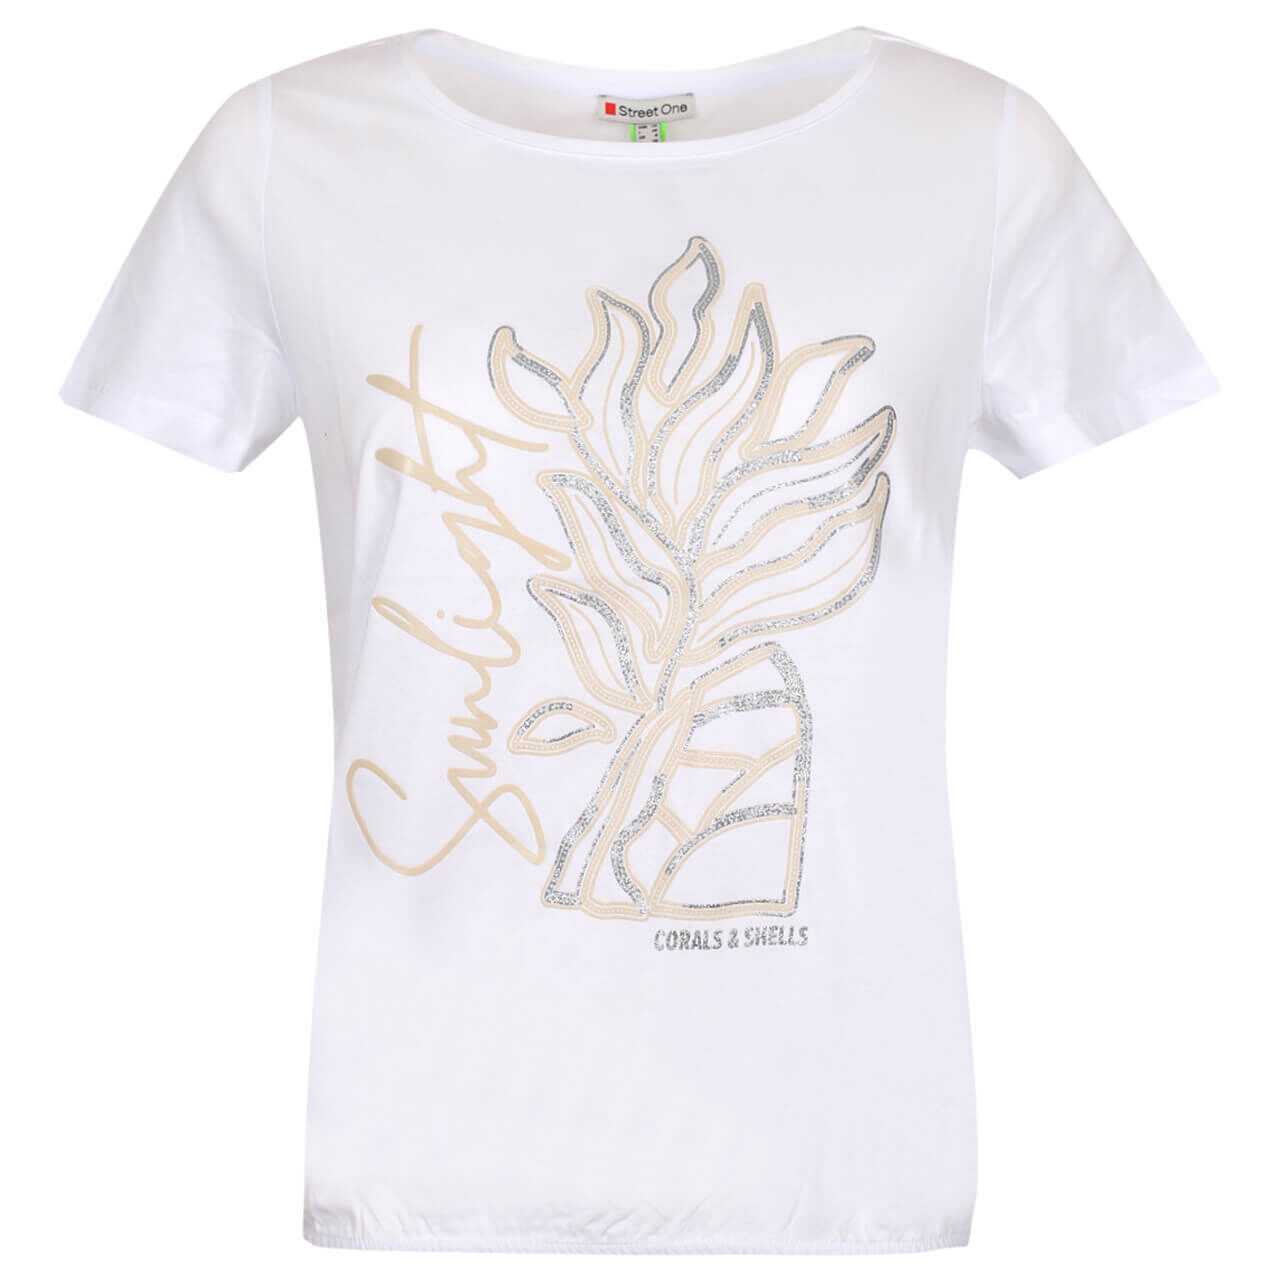 Street One Sunlight Partprint T-Shirt für Damen in Weiß, FarbNr.: 30000